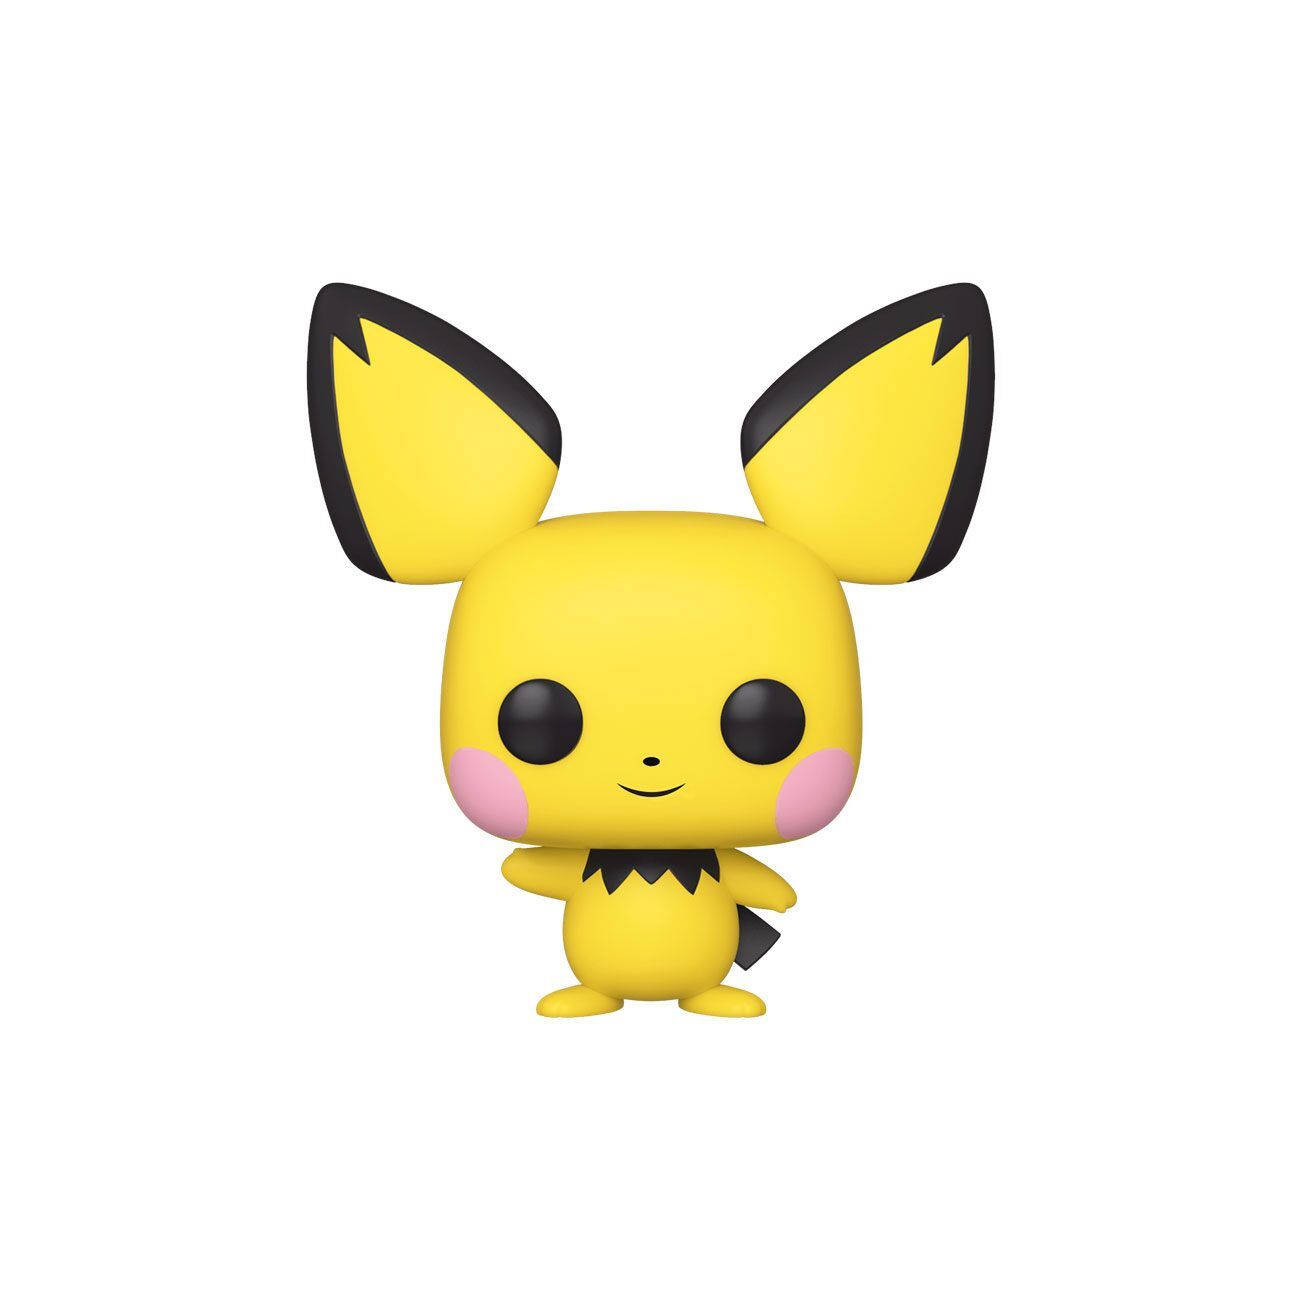 Pokémon Pichu Funko POP 579